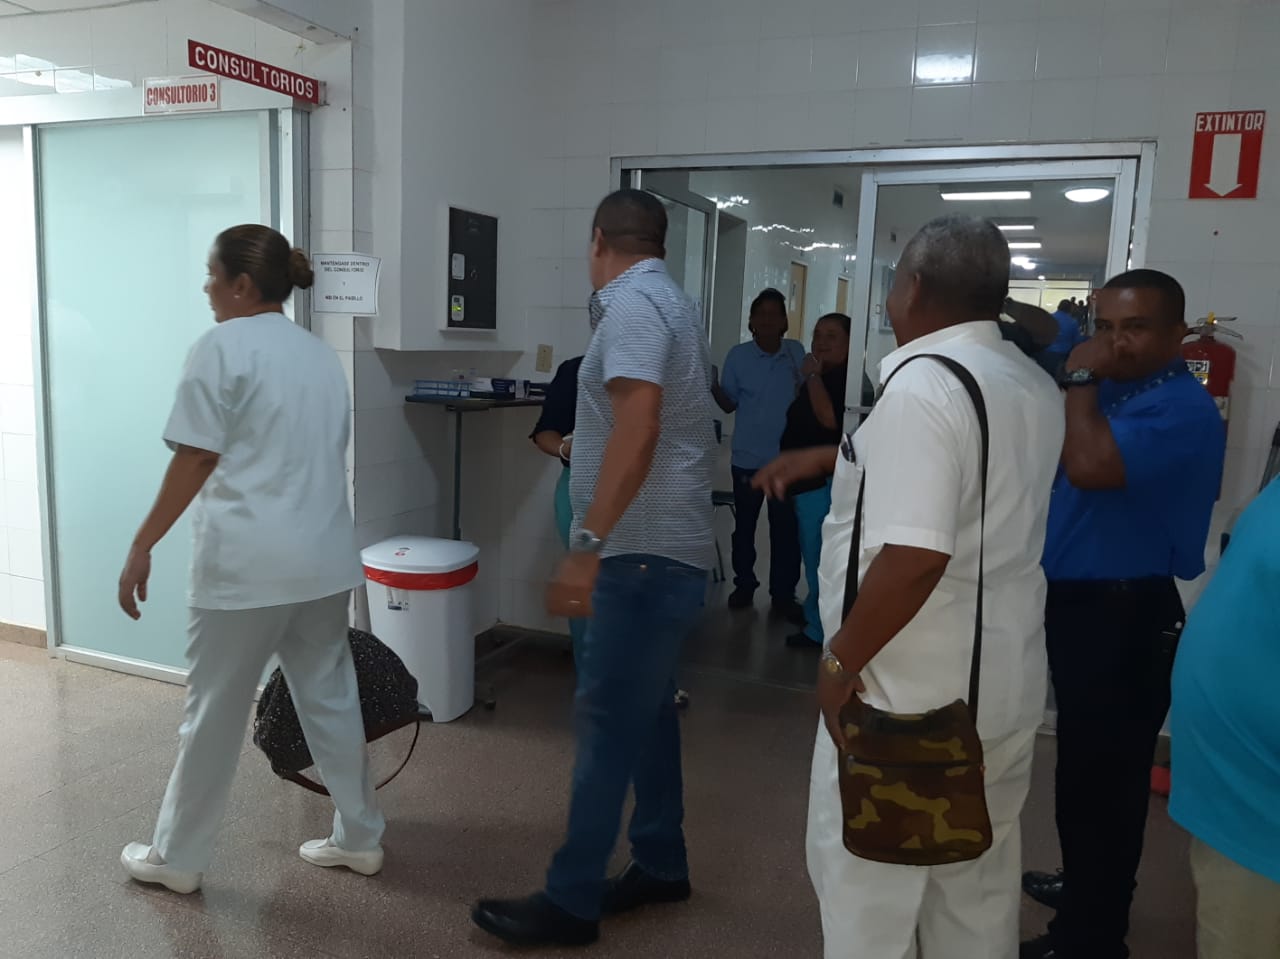 Las autoridades mantiene una estricta vigilancia rn rl área hospitalaria donde varias personas están en cuarentena.  FOTO/Melquiades Vázques